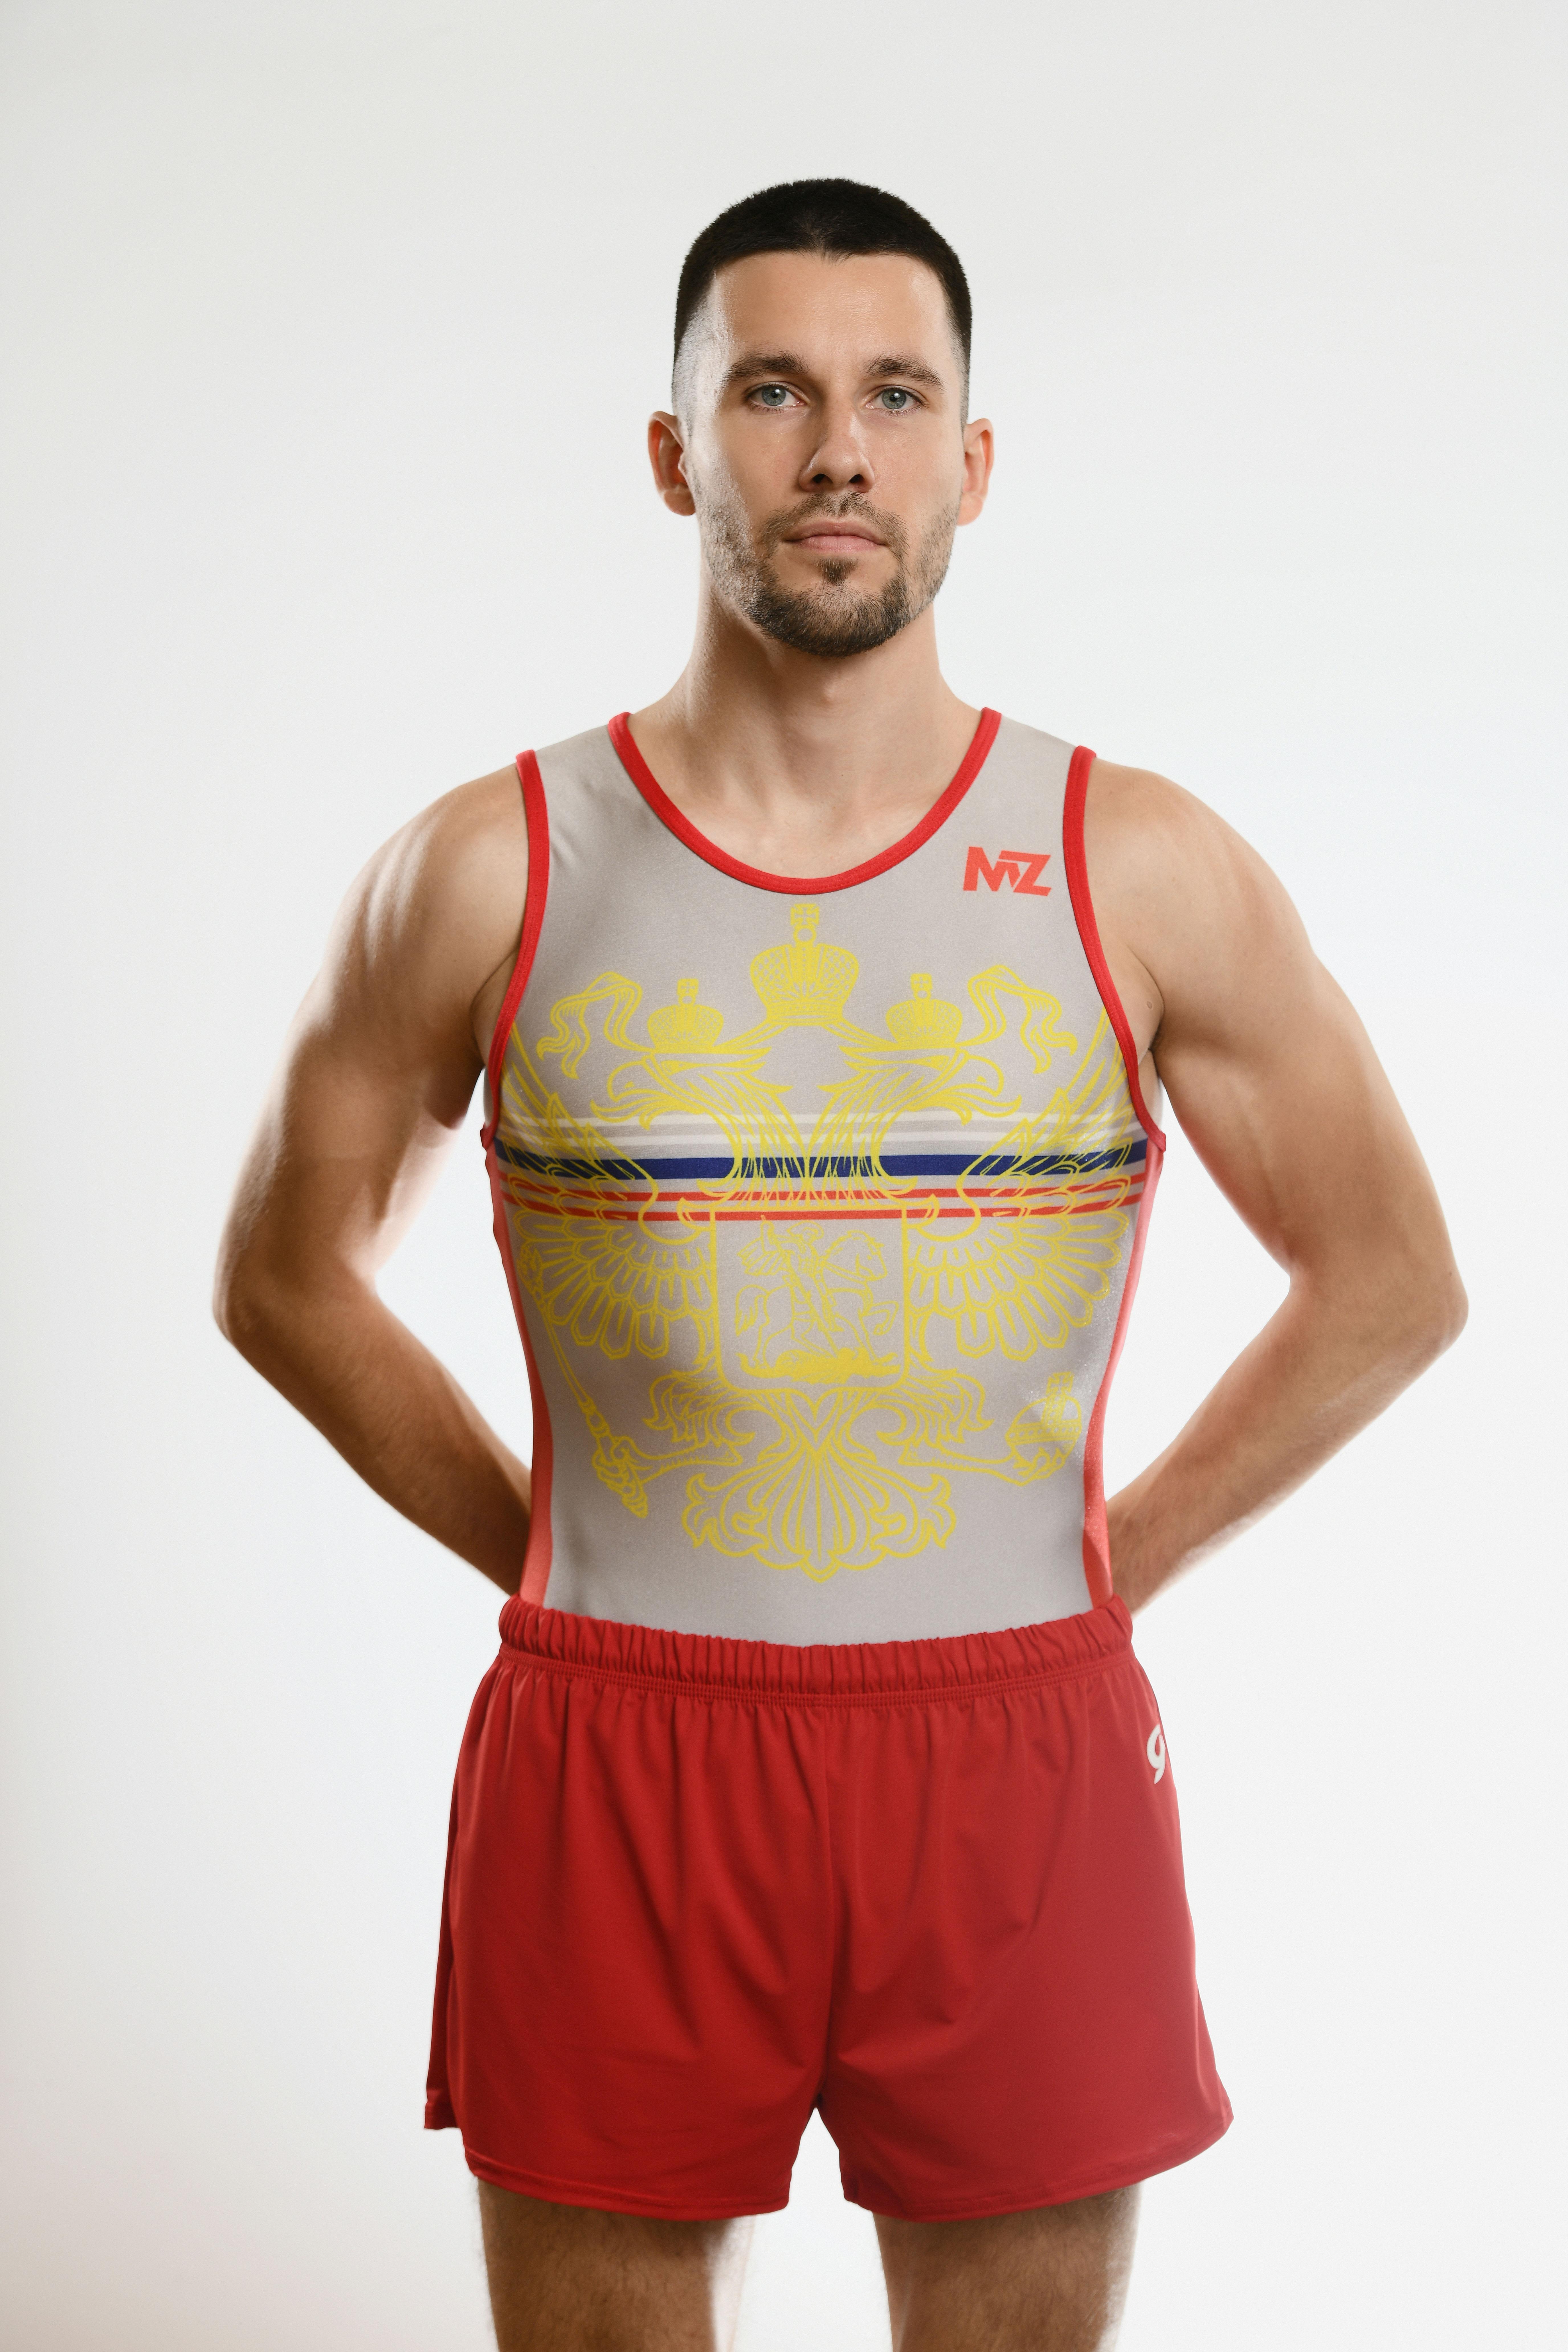 Купальник мужской для спортивной гимнастики GK Sport MZ 201-6 белый с красным кантом без рукава